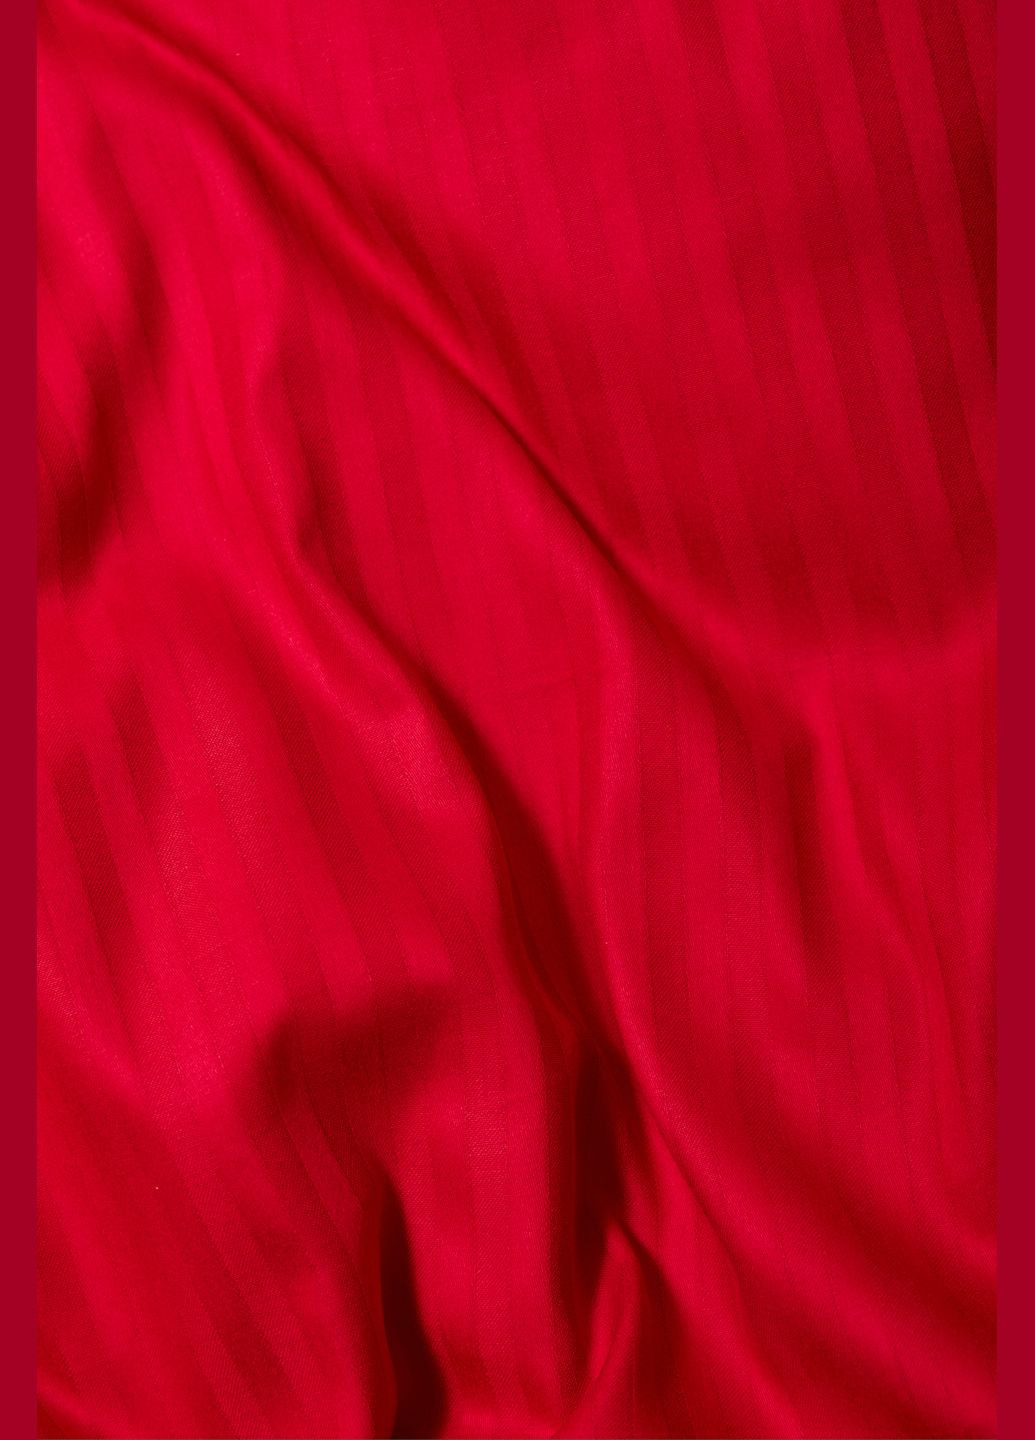 Комплект постельного белья Satin Stripe полуторный евро 160х220 наволочки 2х40х60 (MS-820003590) Moon&Star stripe red (288044033)